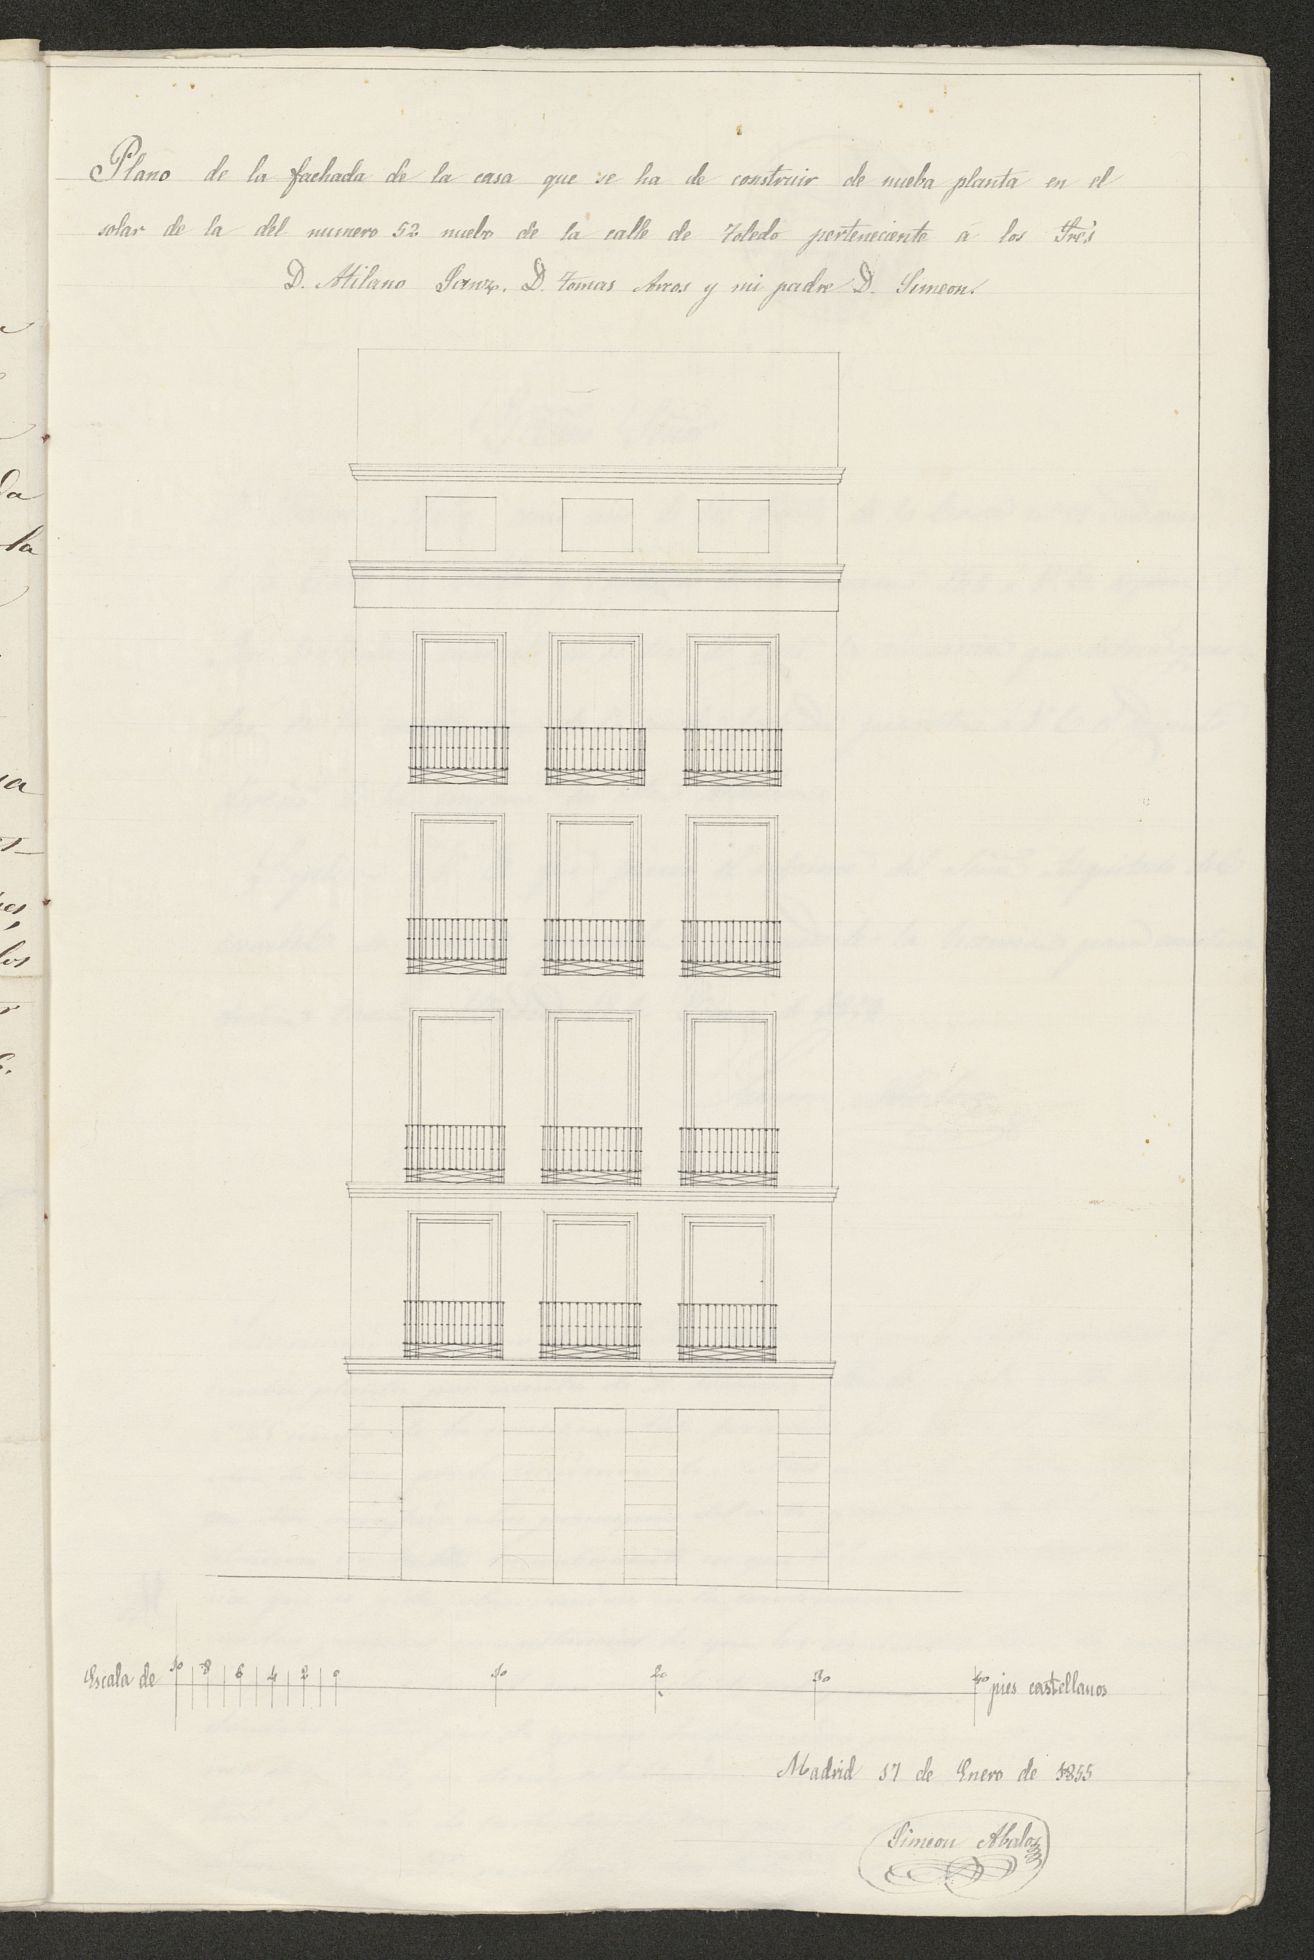 D. Simen Abalos, construir una casa en la calle de Toledo n 52 nuevo manzana 146. (1855)